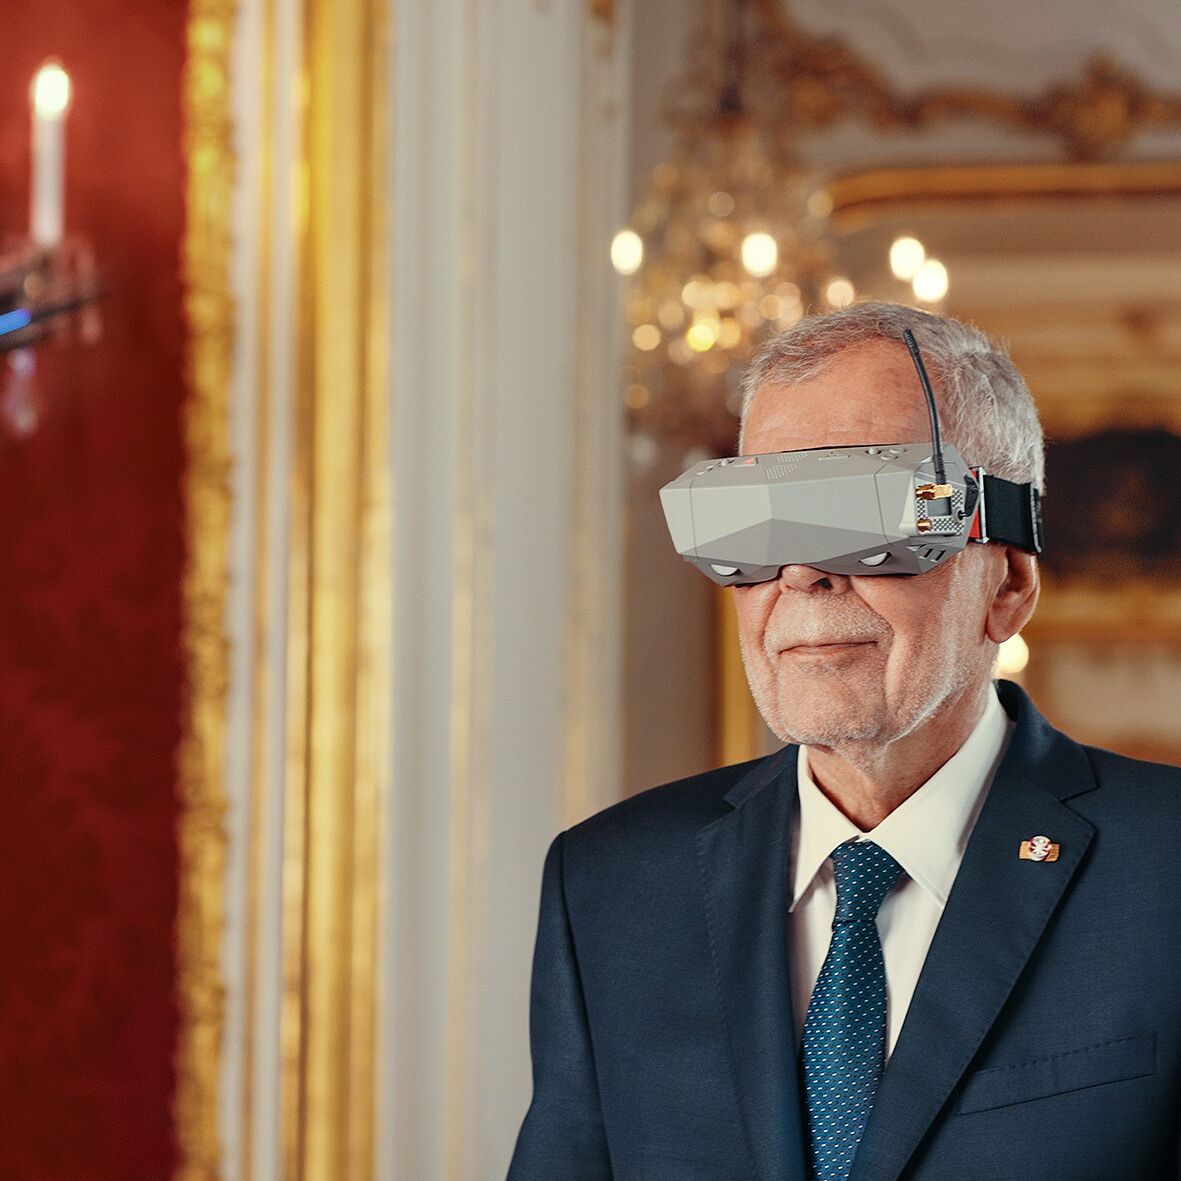 Bundespräsident lädt zum virtuellen Tag der offenen Tür in die Präsidentschaftskanzlei